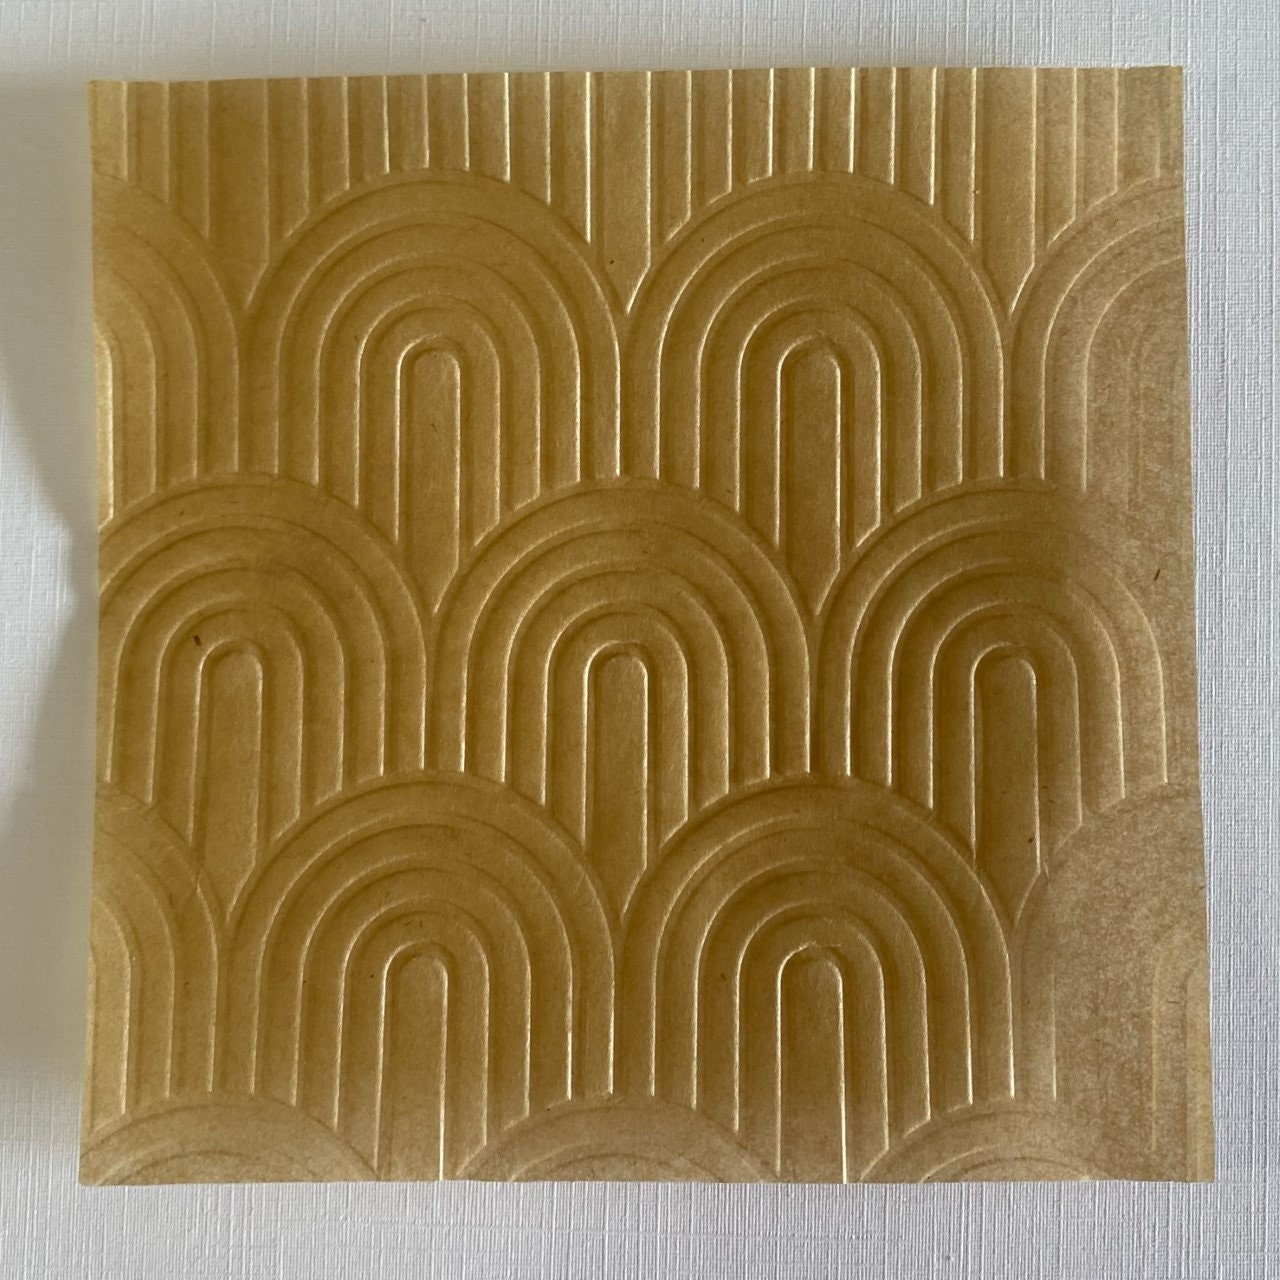  Parchment Paper Squares 4x4 Precut Unbleached